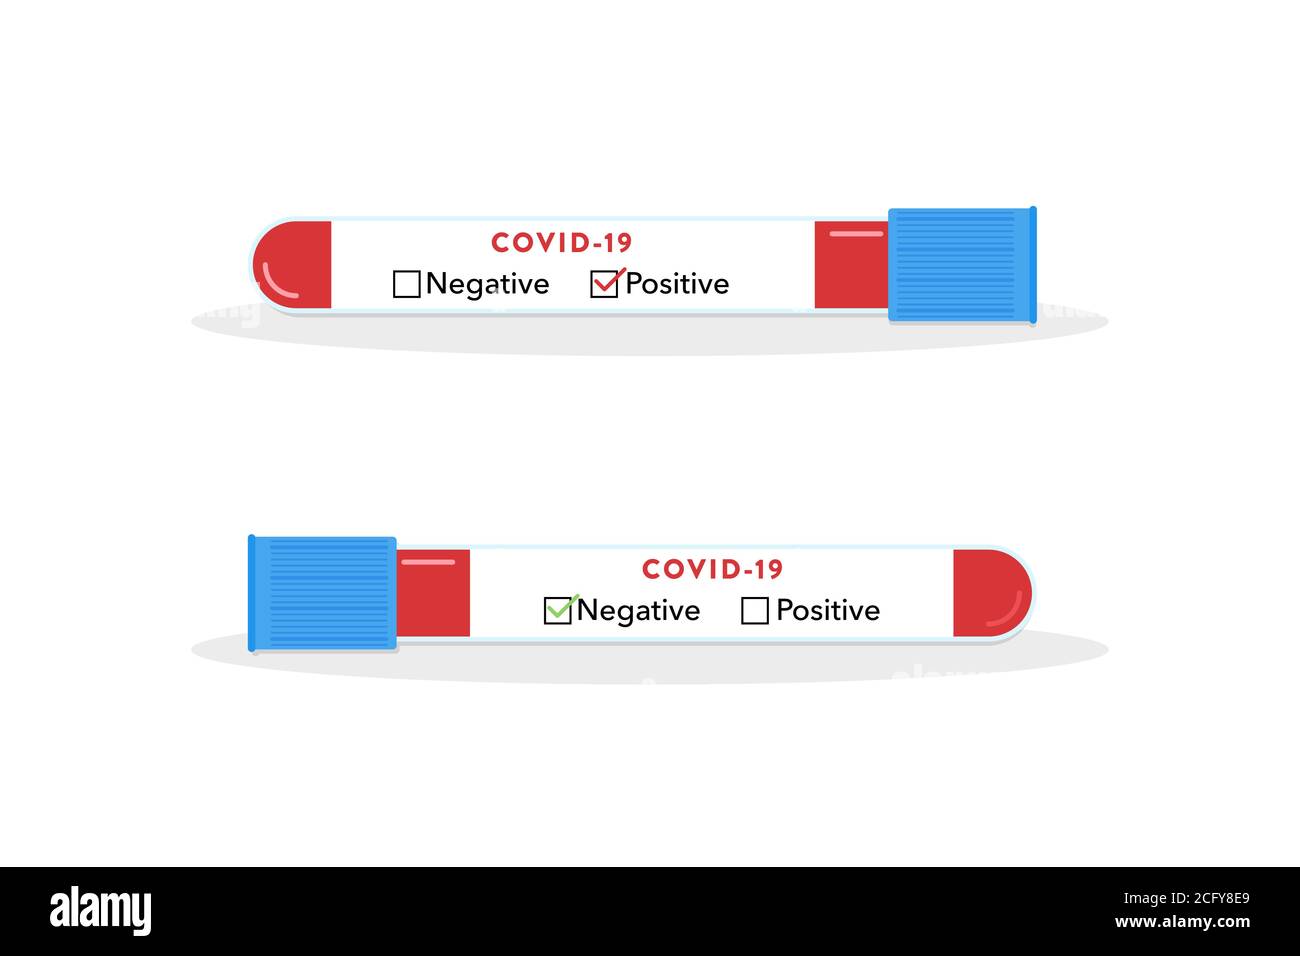 Reagenzgläser für die Coronavirus-Diagnose. Covid-19-Test. Positives Ergebnis. Negatives Ergebnis. Blutproben eines Patienten. Weltweite Pandemie-Infektion. Stock Vektor